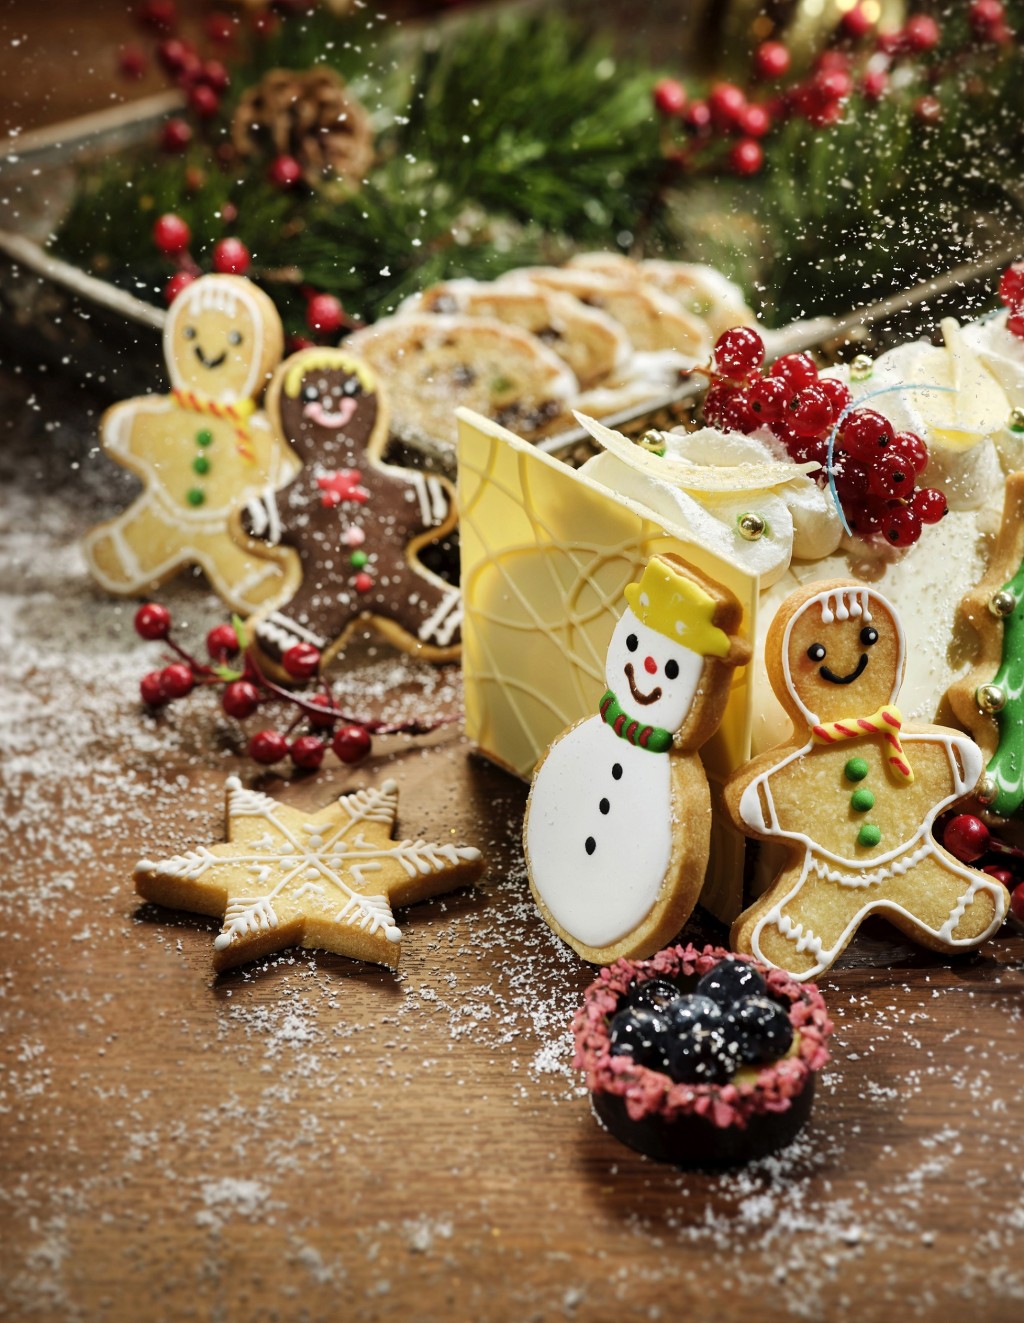 平安夜及聖誕節當天更特別增添果子麵包、樹頭蛋糕等經典聖誕甜品